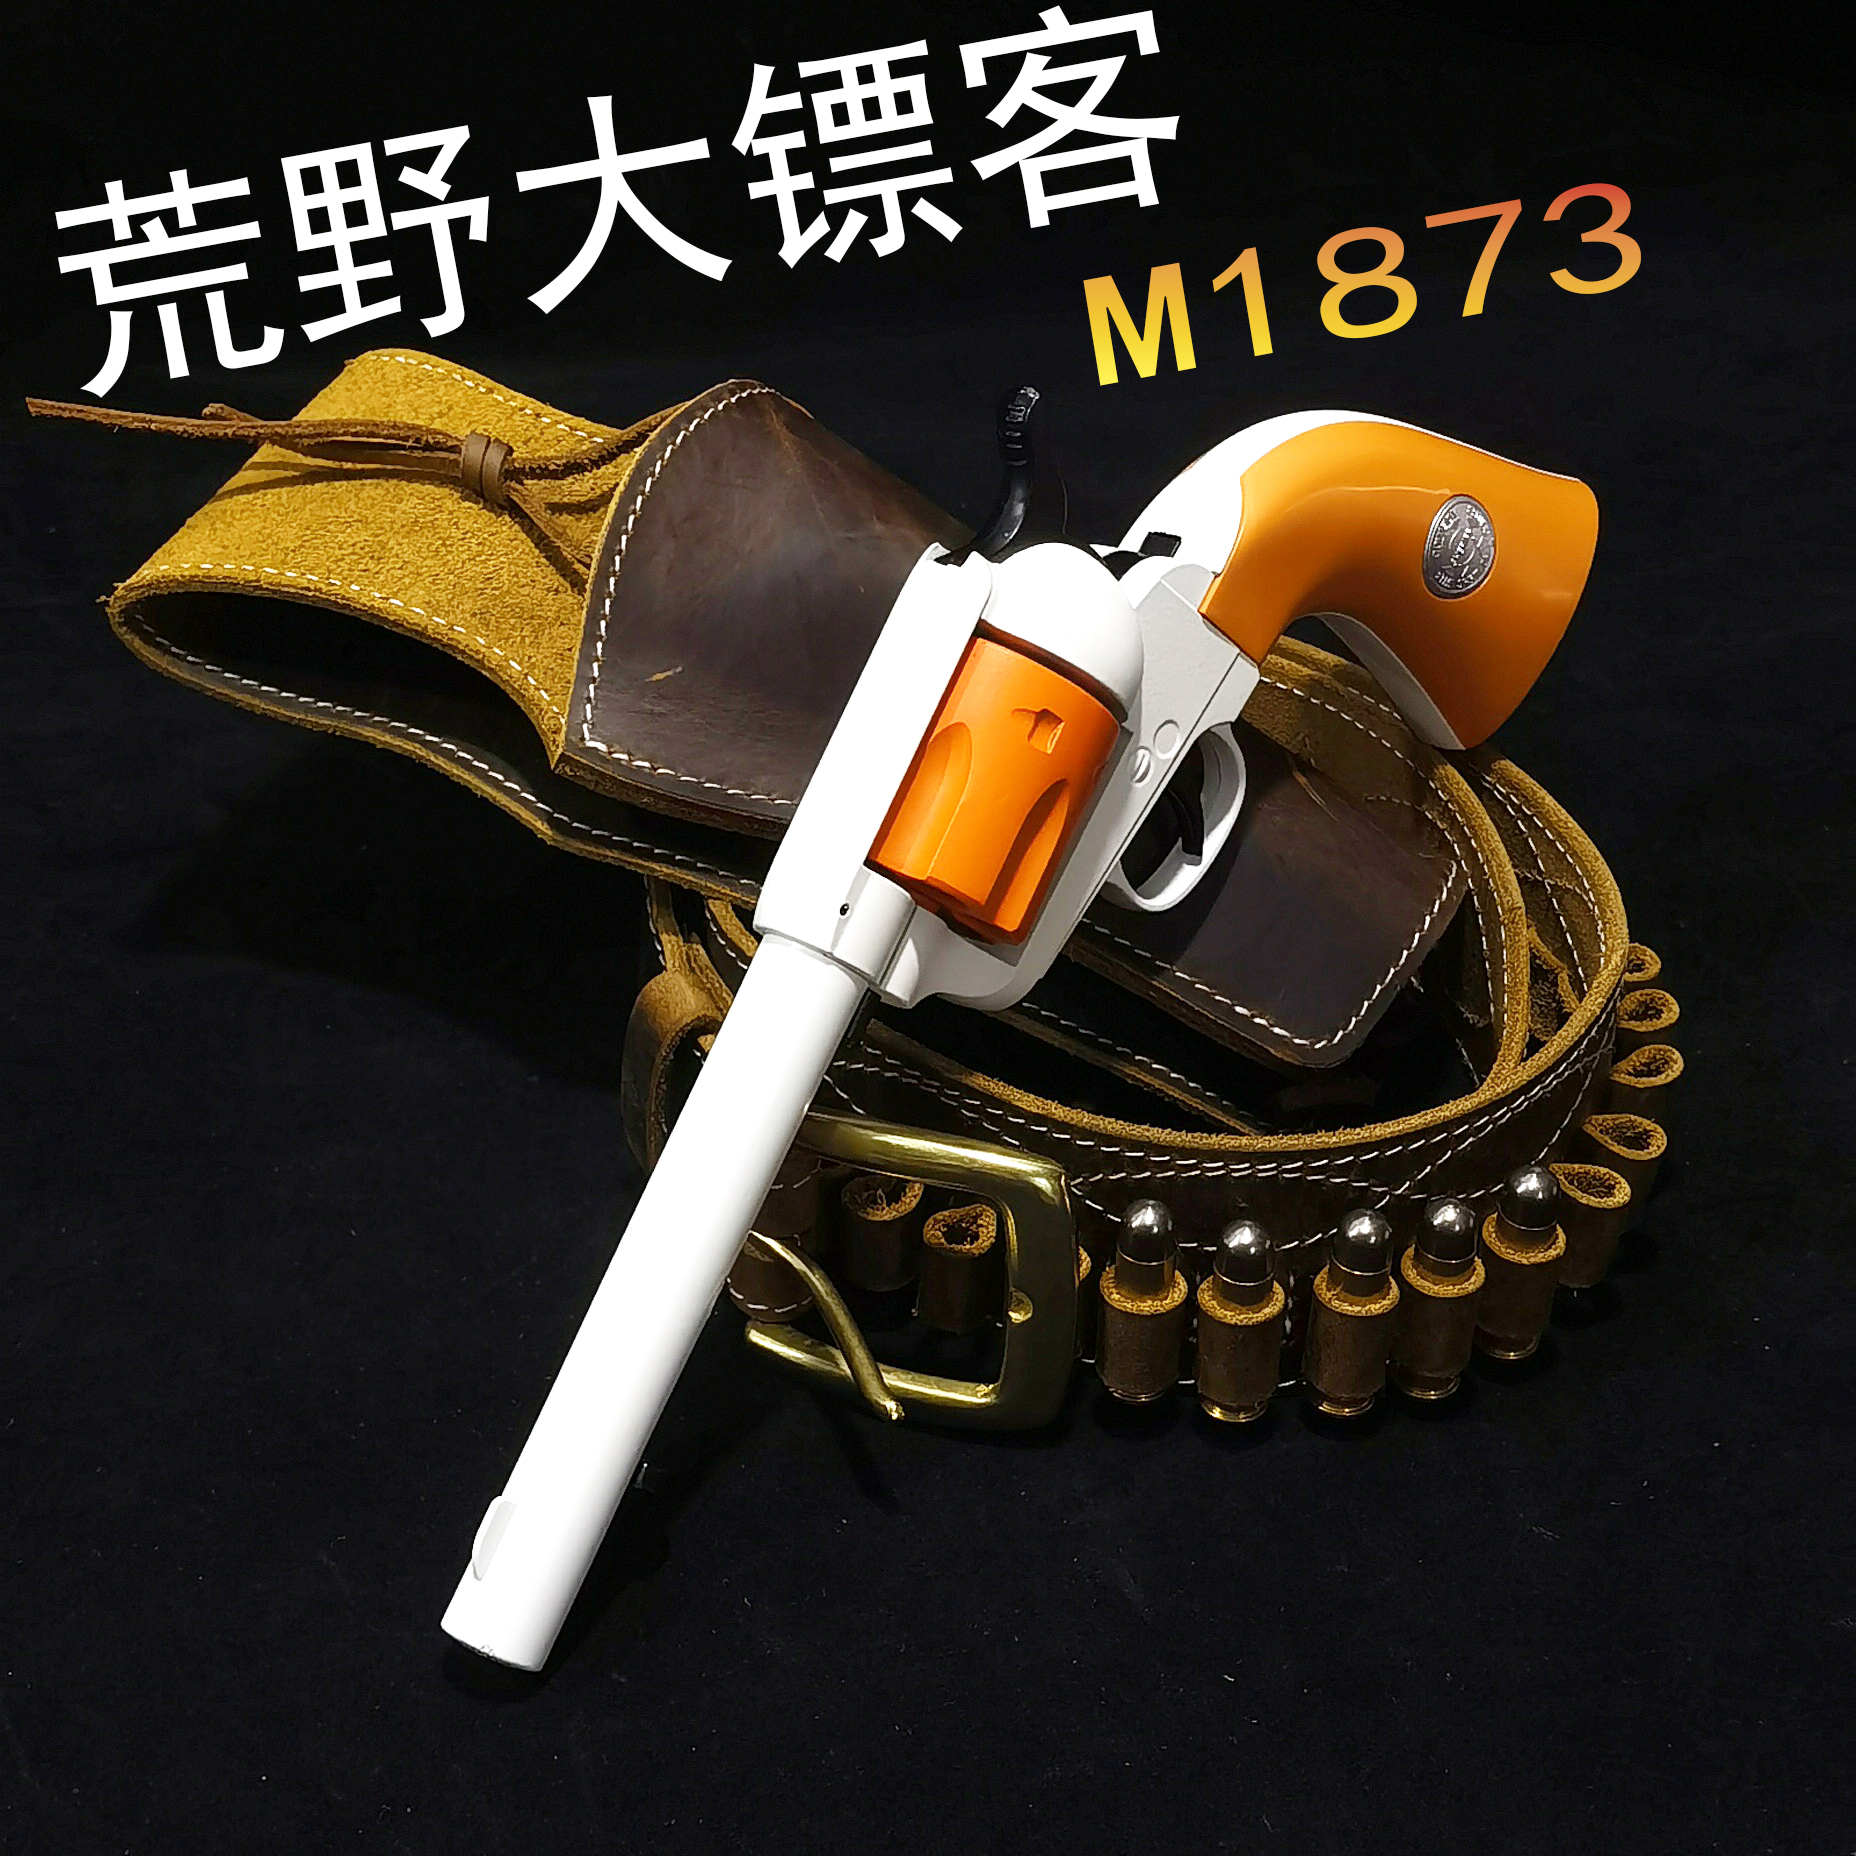 龑虎M1873乖巧虎软弹枪单动式牛仔转轮左轮抛壳模型安全电镀玩具